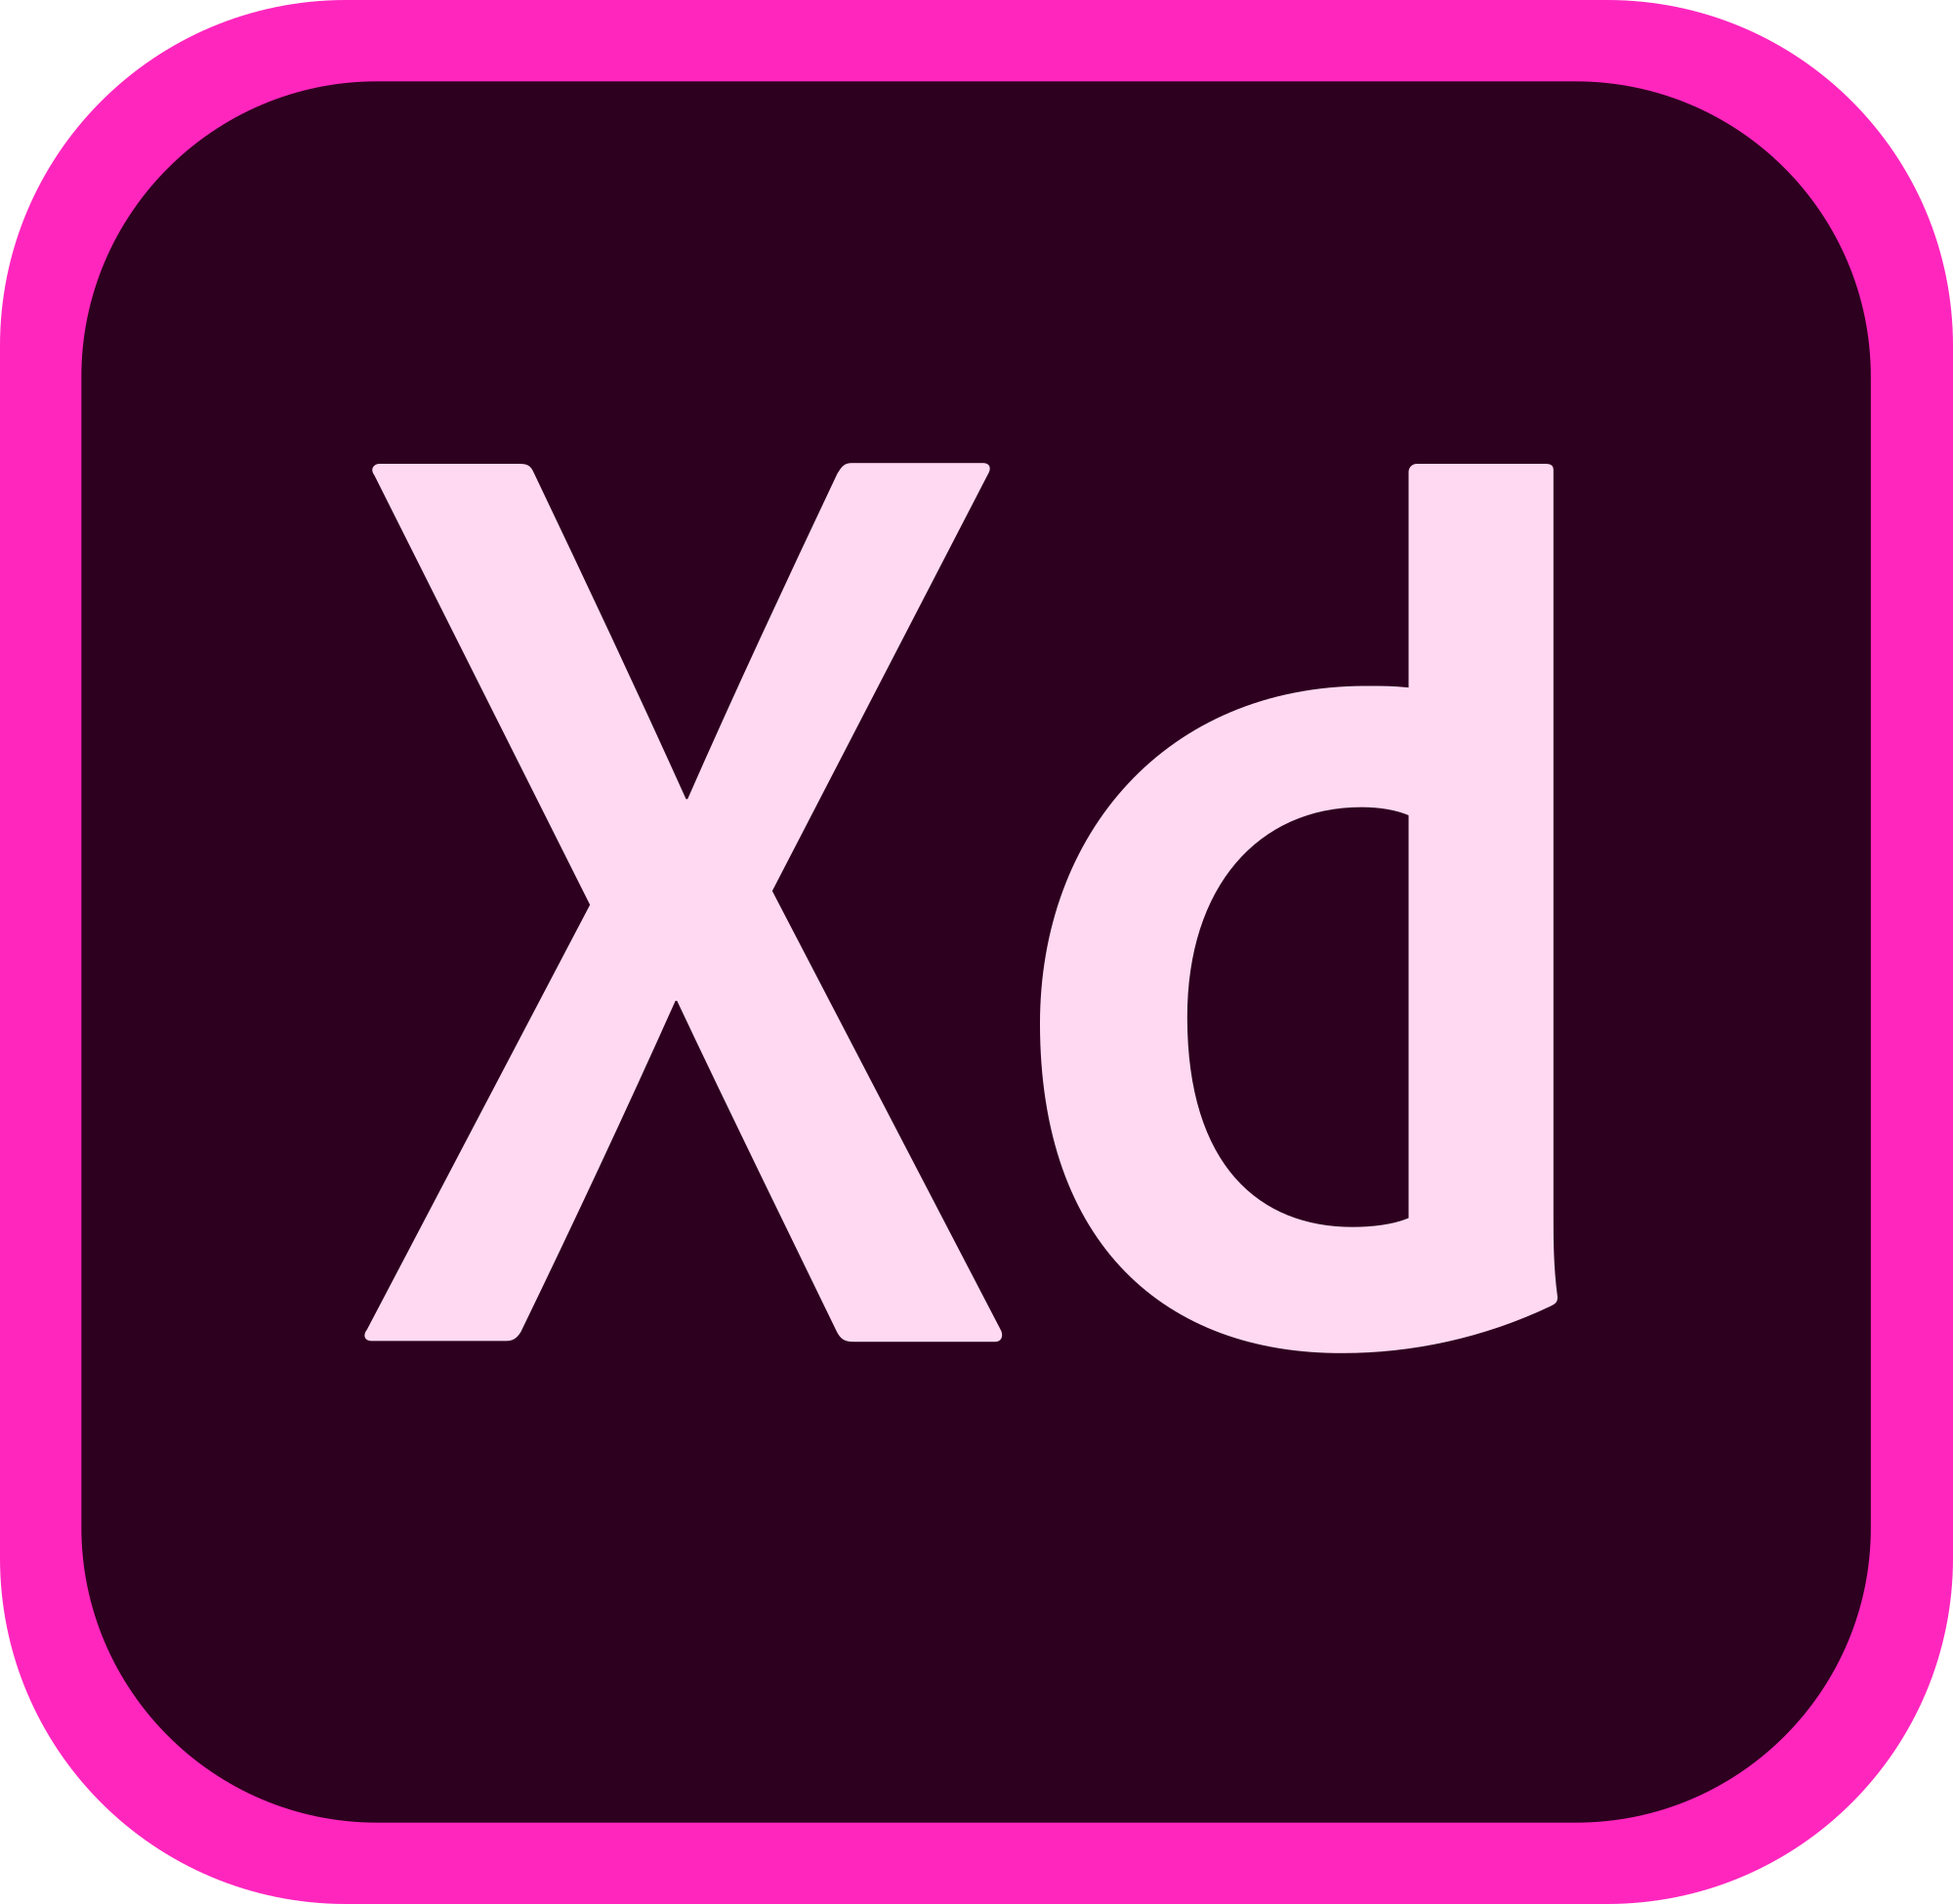 Adobe XD logo 